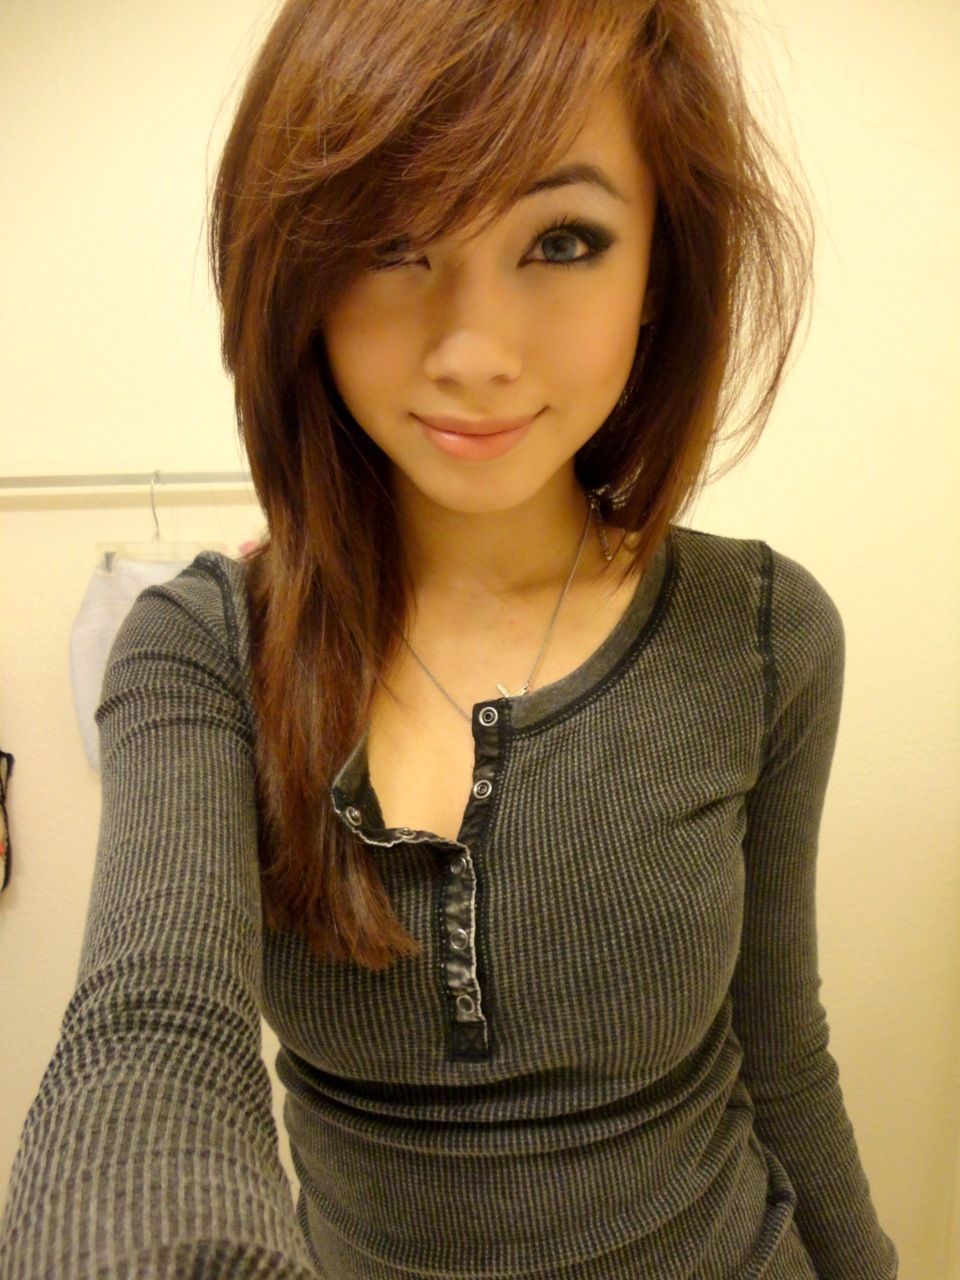 Asian teen cute young girls selfies